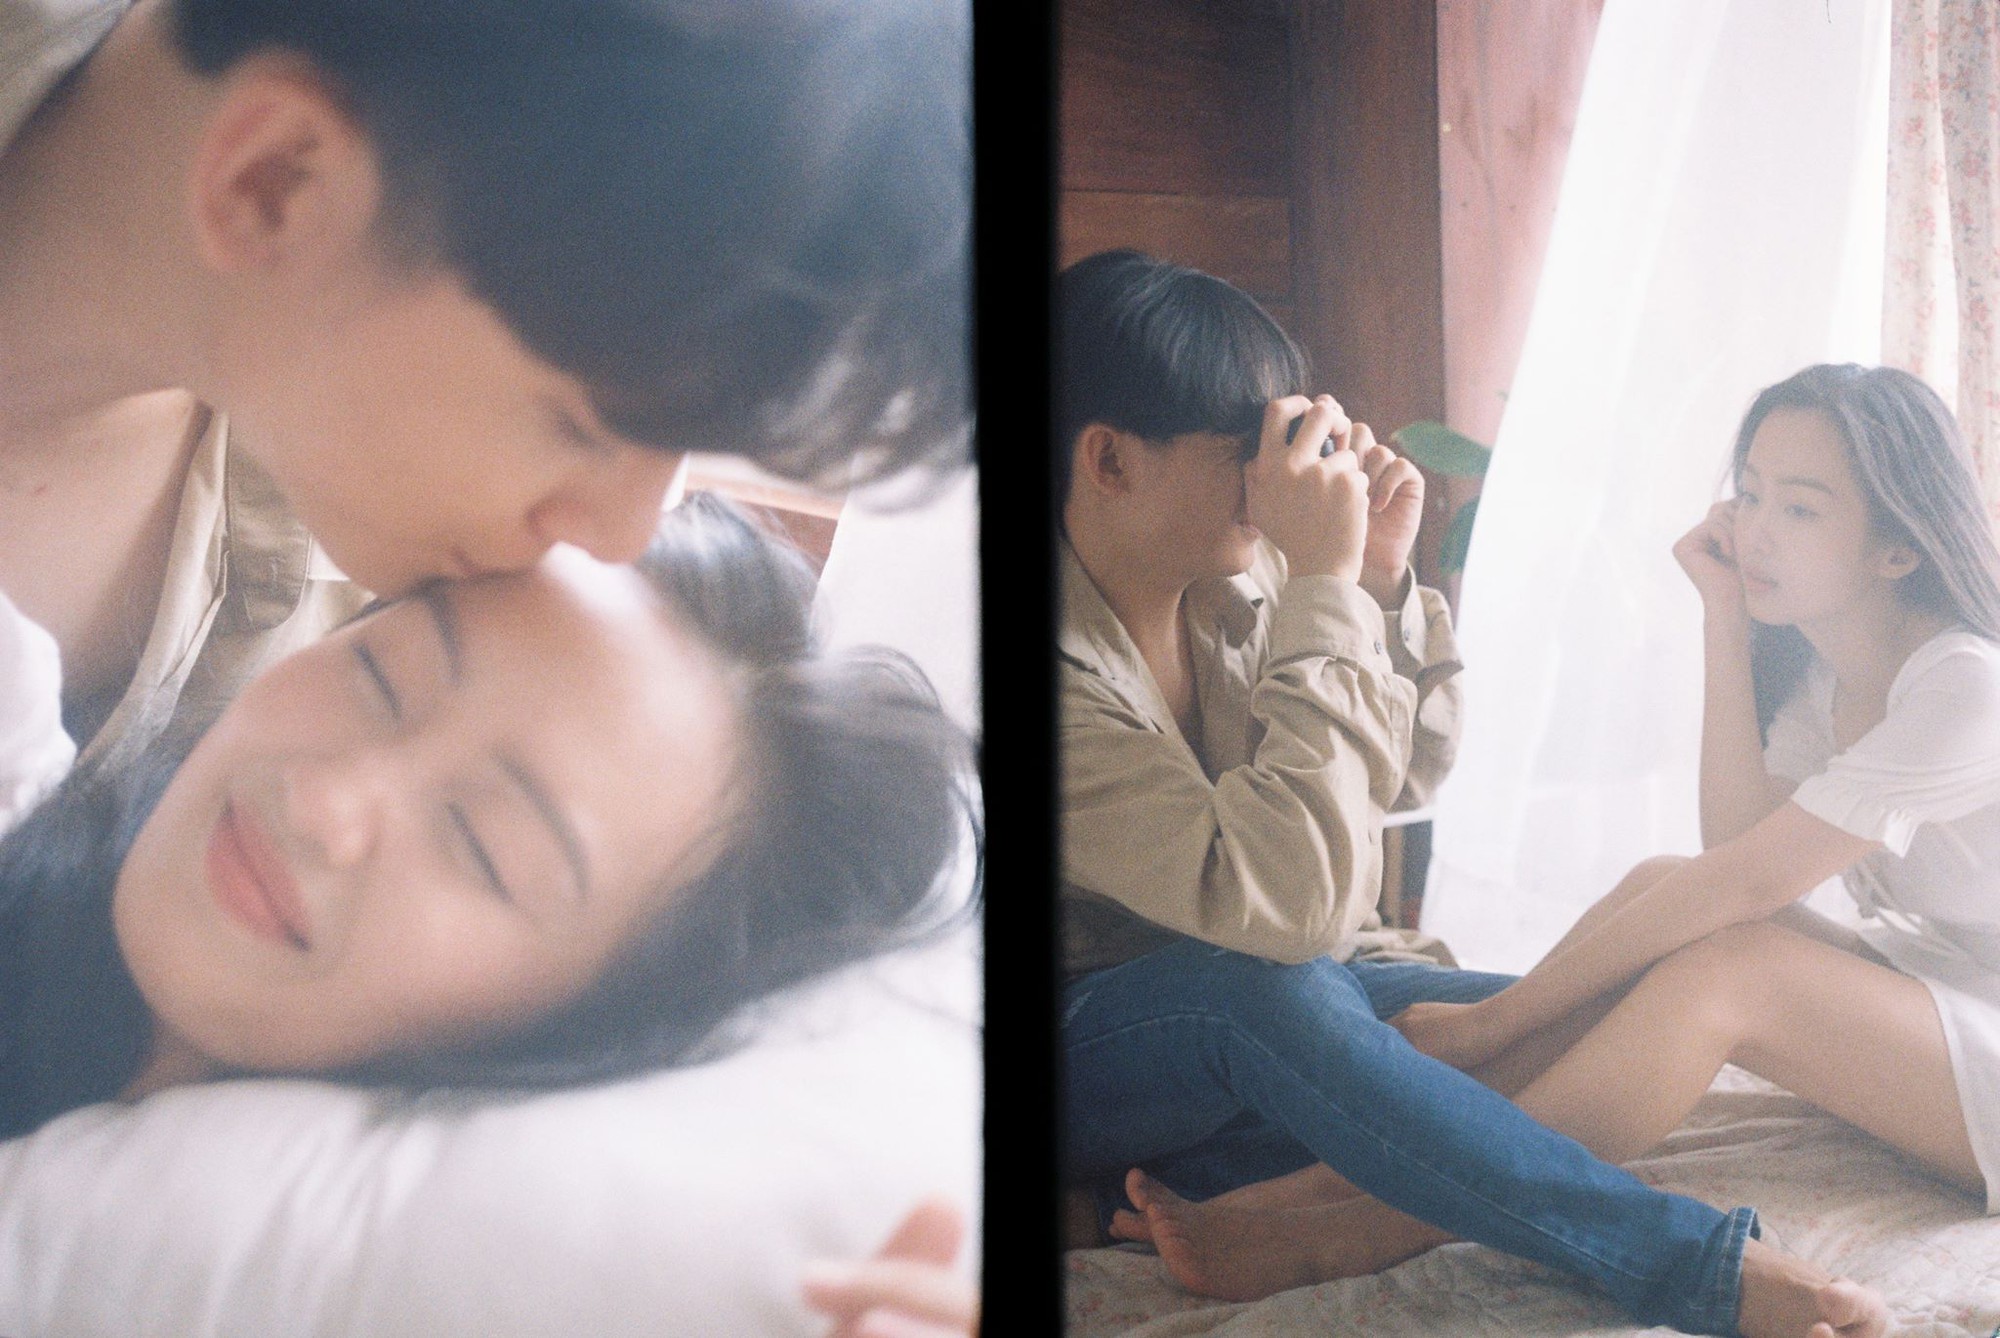 Đâu cần phải cầu kỳ, cứ yêu và chụp với nhau một bộ ảnh bằng máy phim thì không khác gì poster phim Hong Kong chất lừ - Ảnh 4.